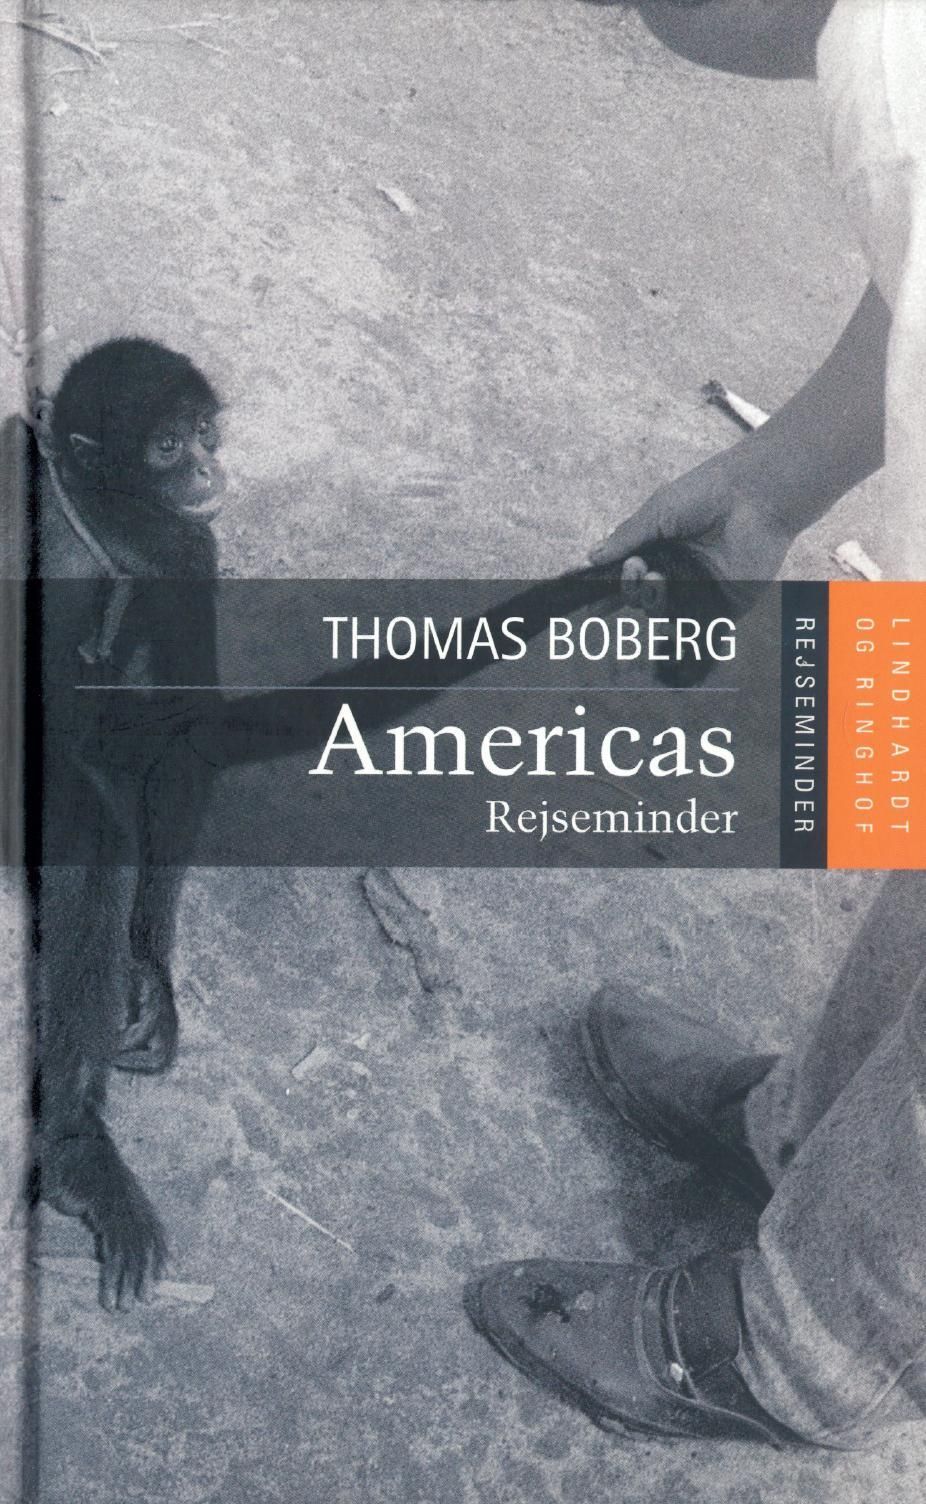 Americas - rejseminder, lydbog af Thomas Boberg